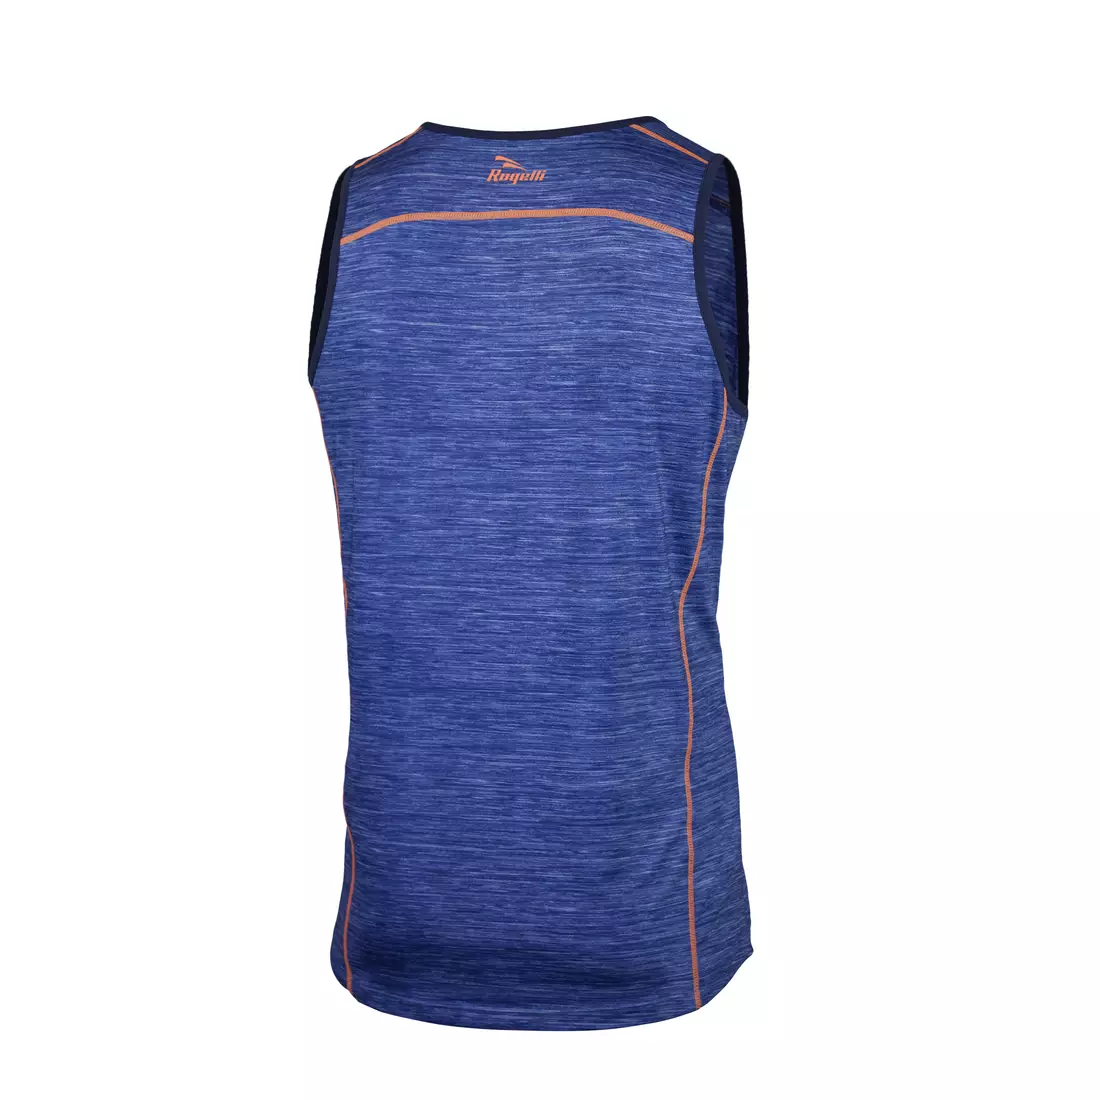 ROGELLI RUN STRUCTURE 830.241 - pánske tričko, bežecká vesta, modrej a oranžovej farby